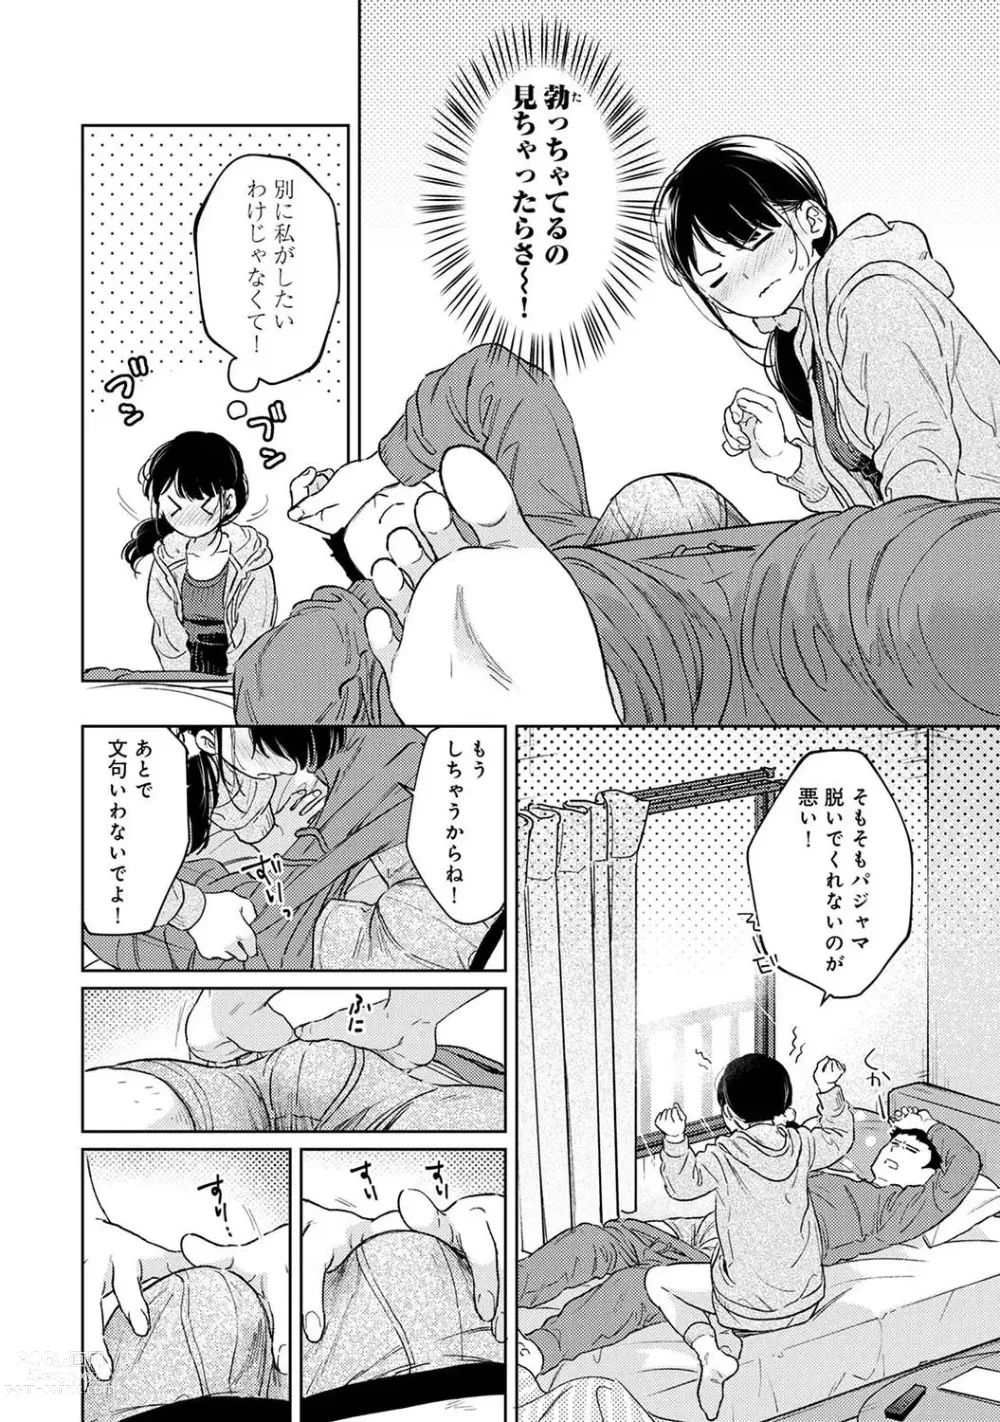 Page 18 of manga COMIC Ananga-Ranga Vol 95